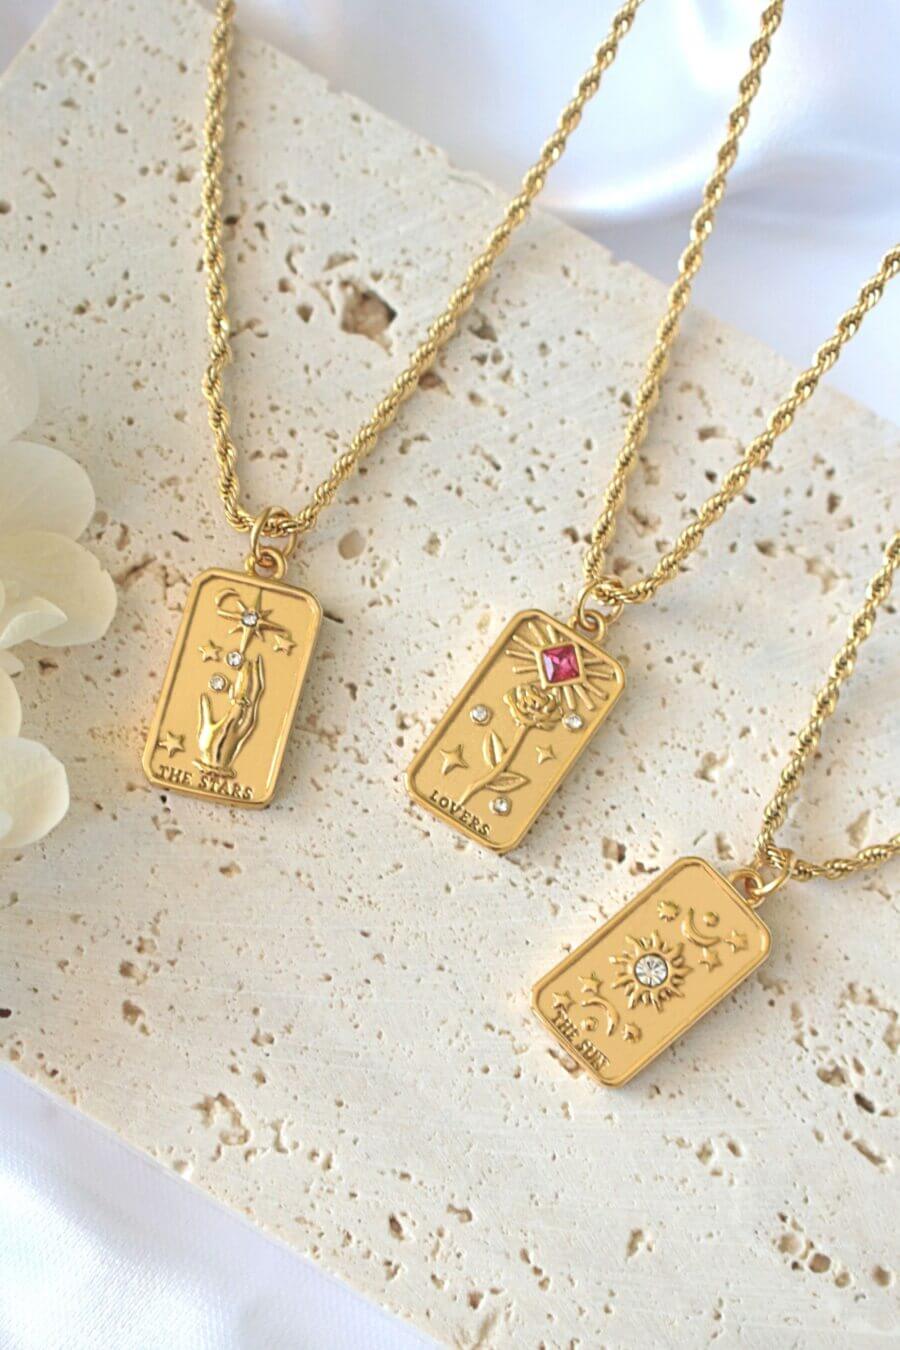 24 karat gold tarot card necklaces